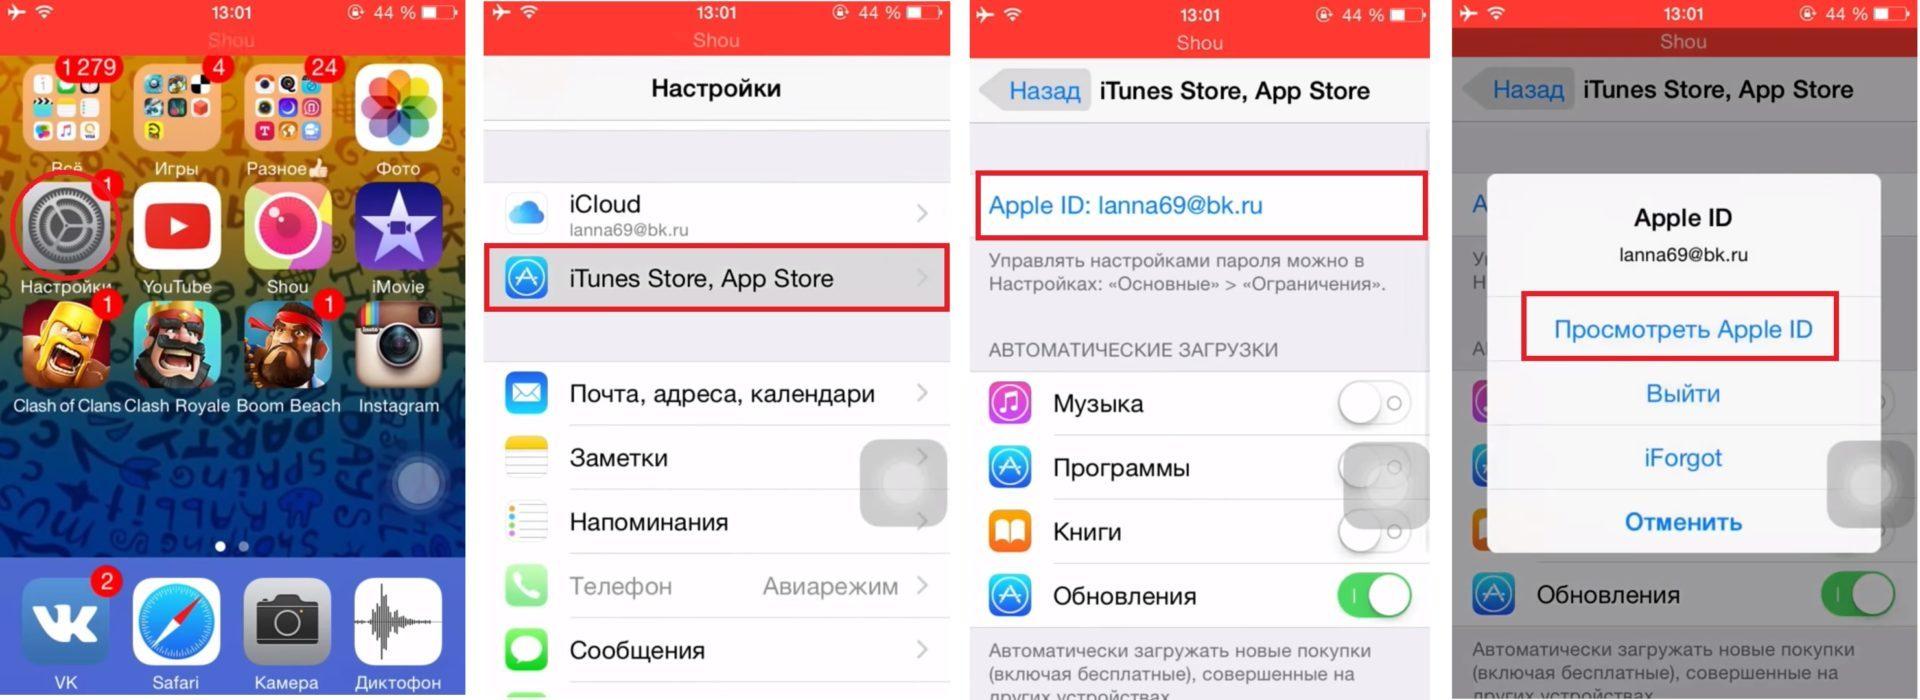 Как перевести телеграмму на русский язык на айфоне фото 93